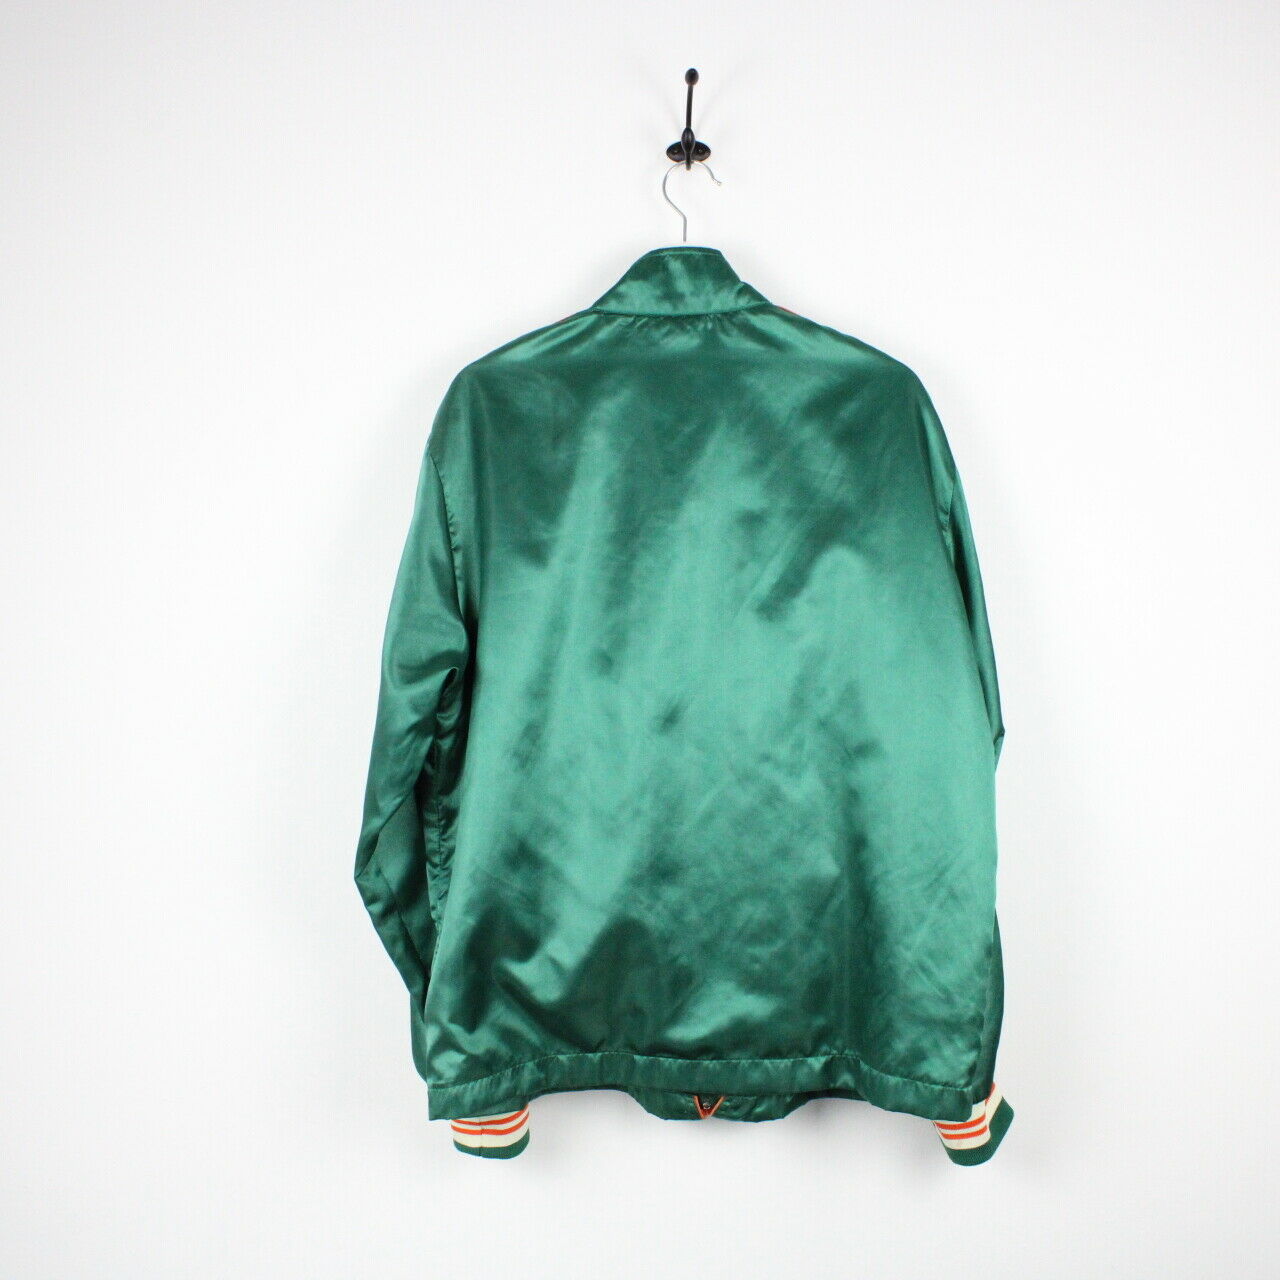 Vintage DIESEL Bomber Jacket Green | Large